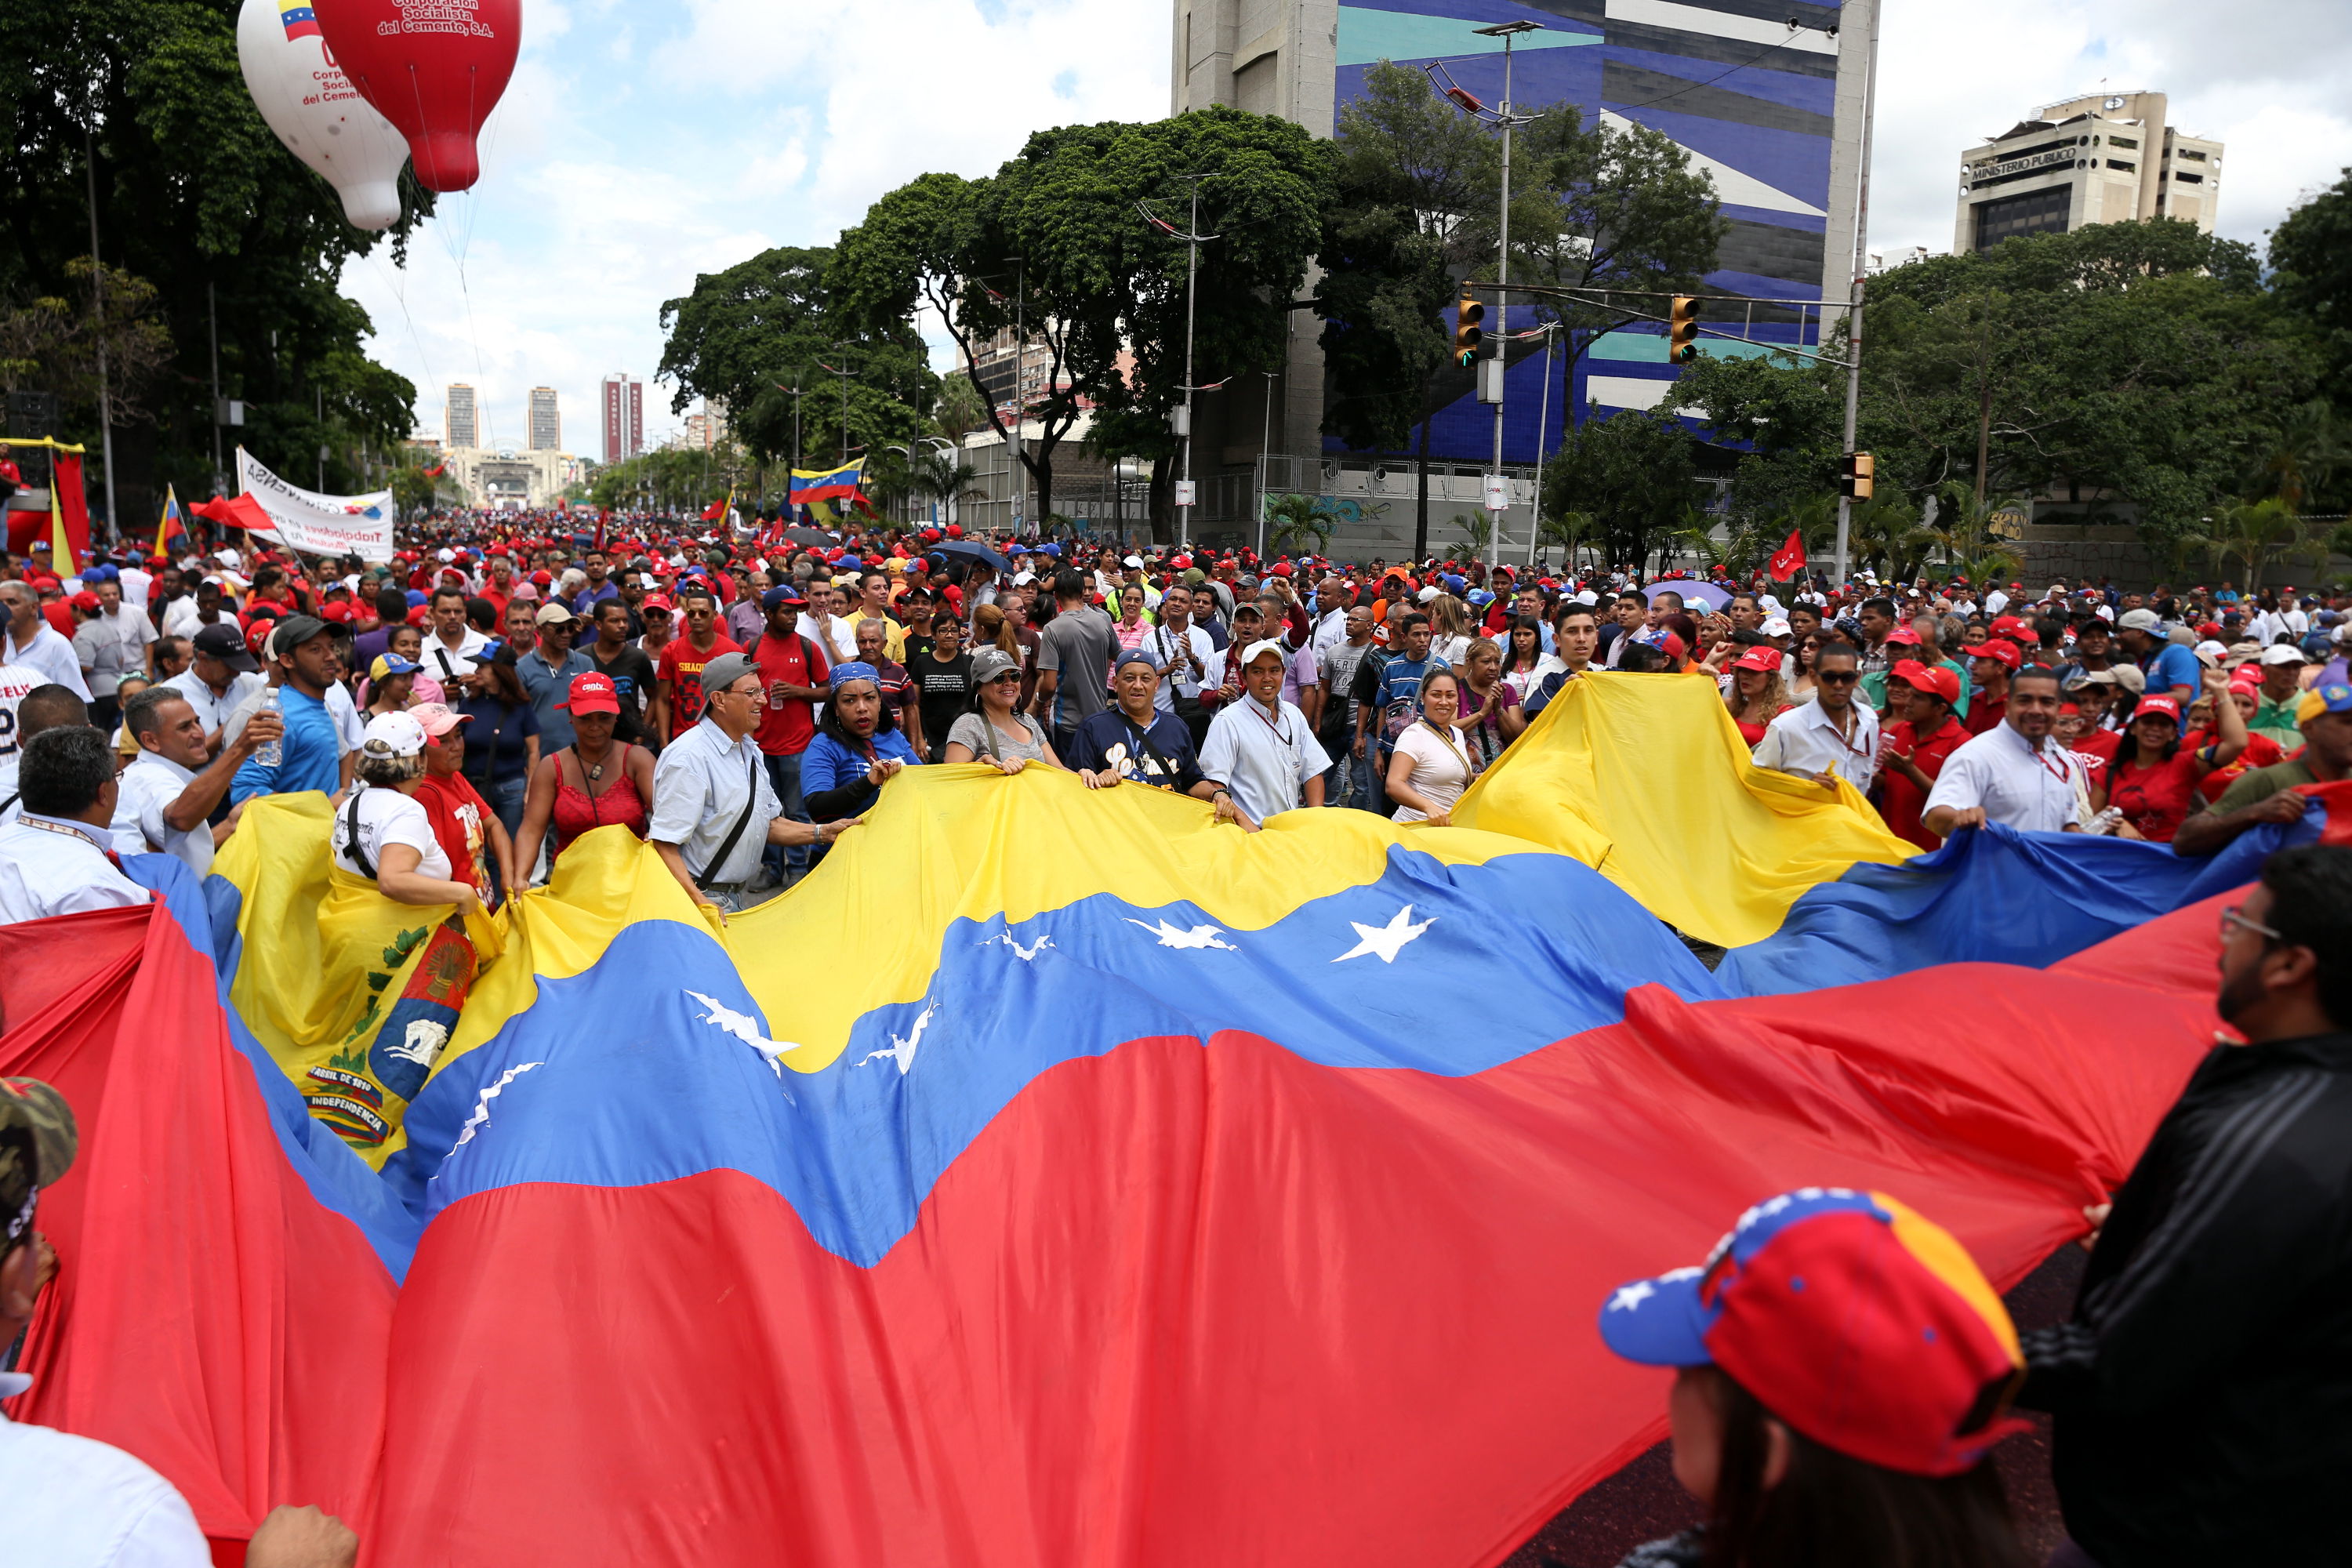 Pueblo y Revolución Bolivariana contaron apoyo internacional este 1 de septiembre, en vista a las acciones desestabilizadoras de la oposición venezolana.